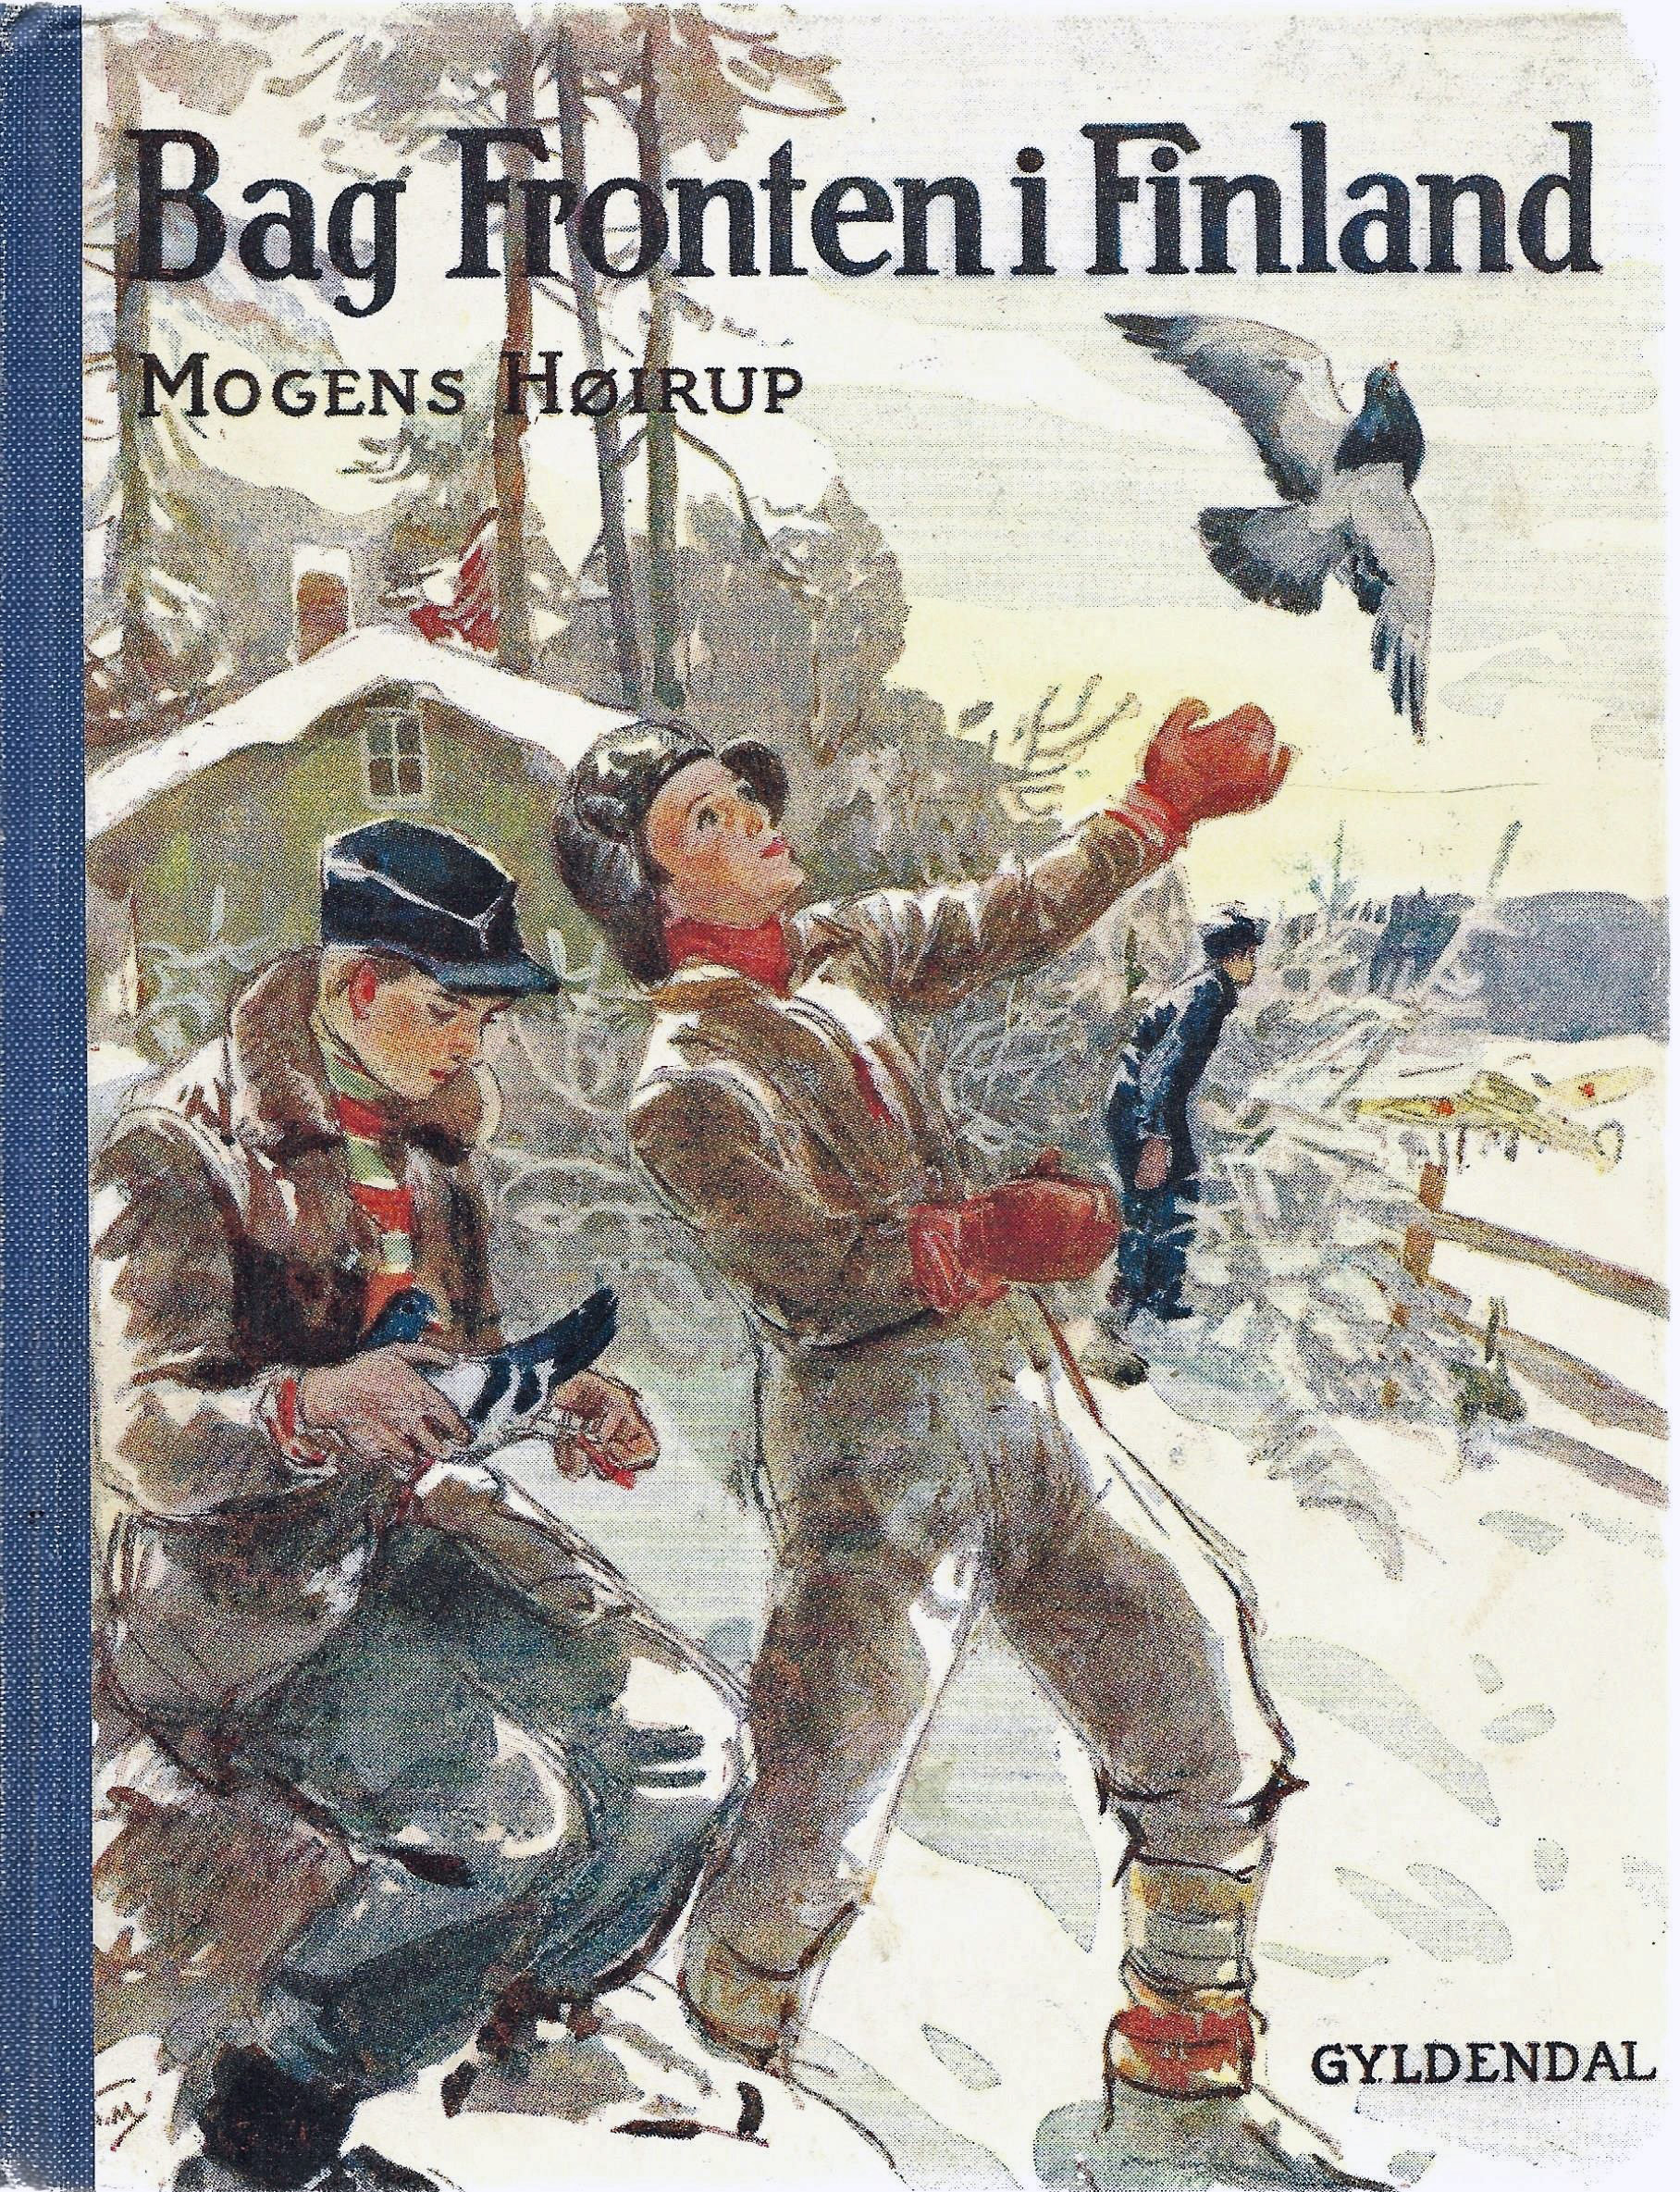 Bag fronten i Finland - Mogens Højrup 1942